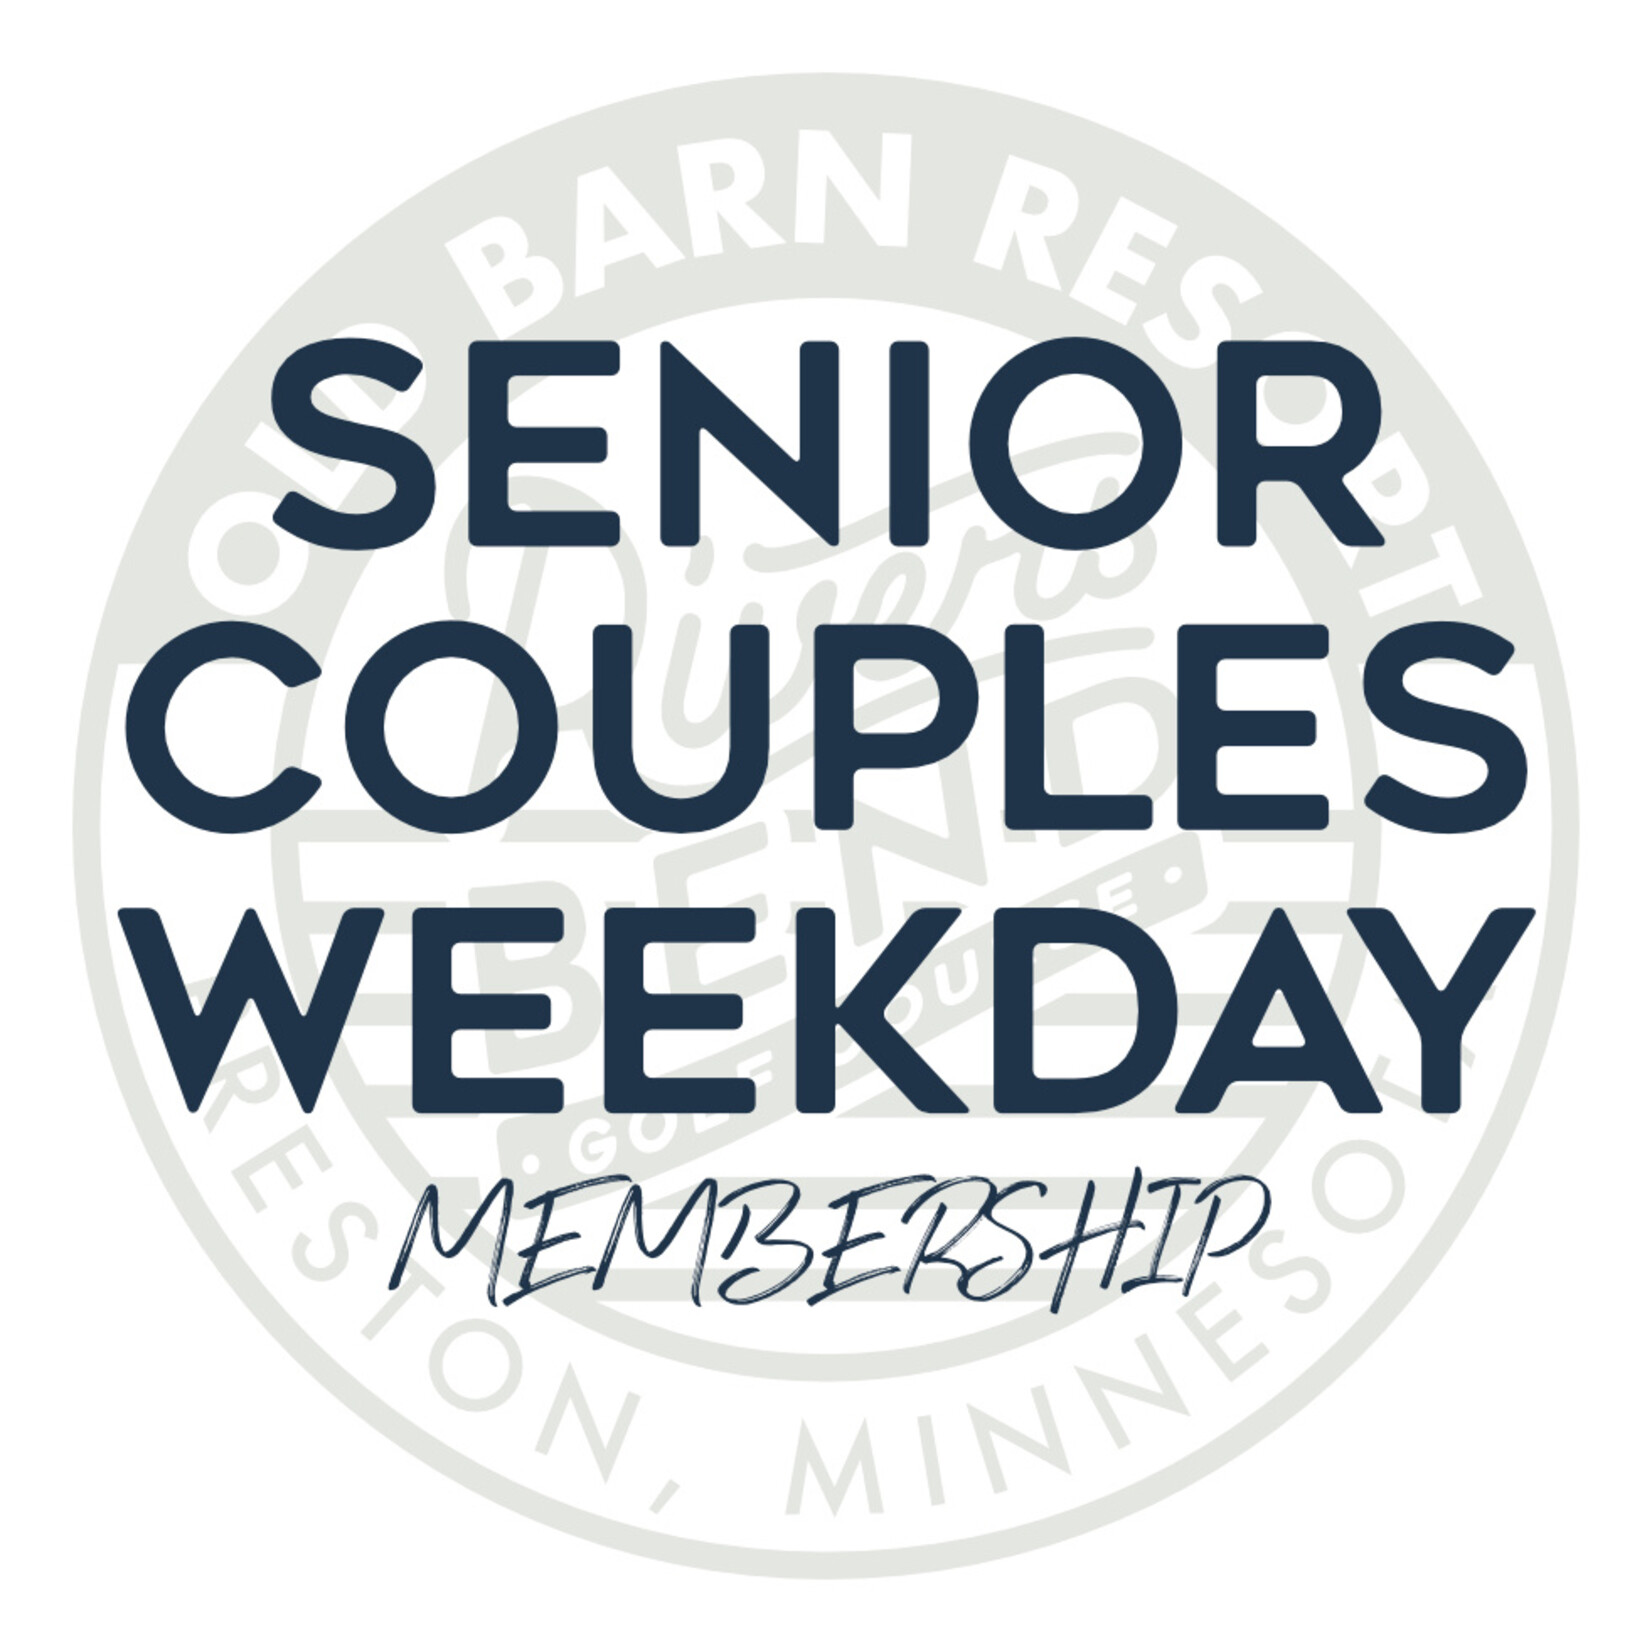 Senior Couples Weekday Membership - Weekday Member